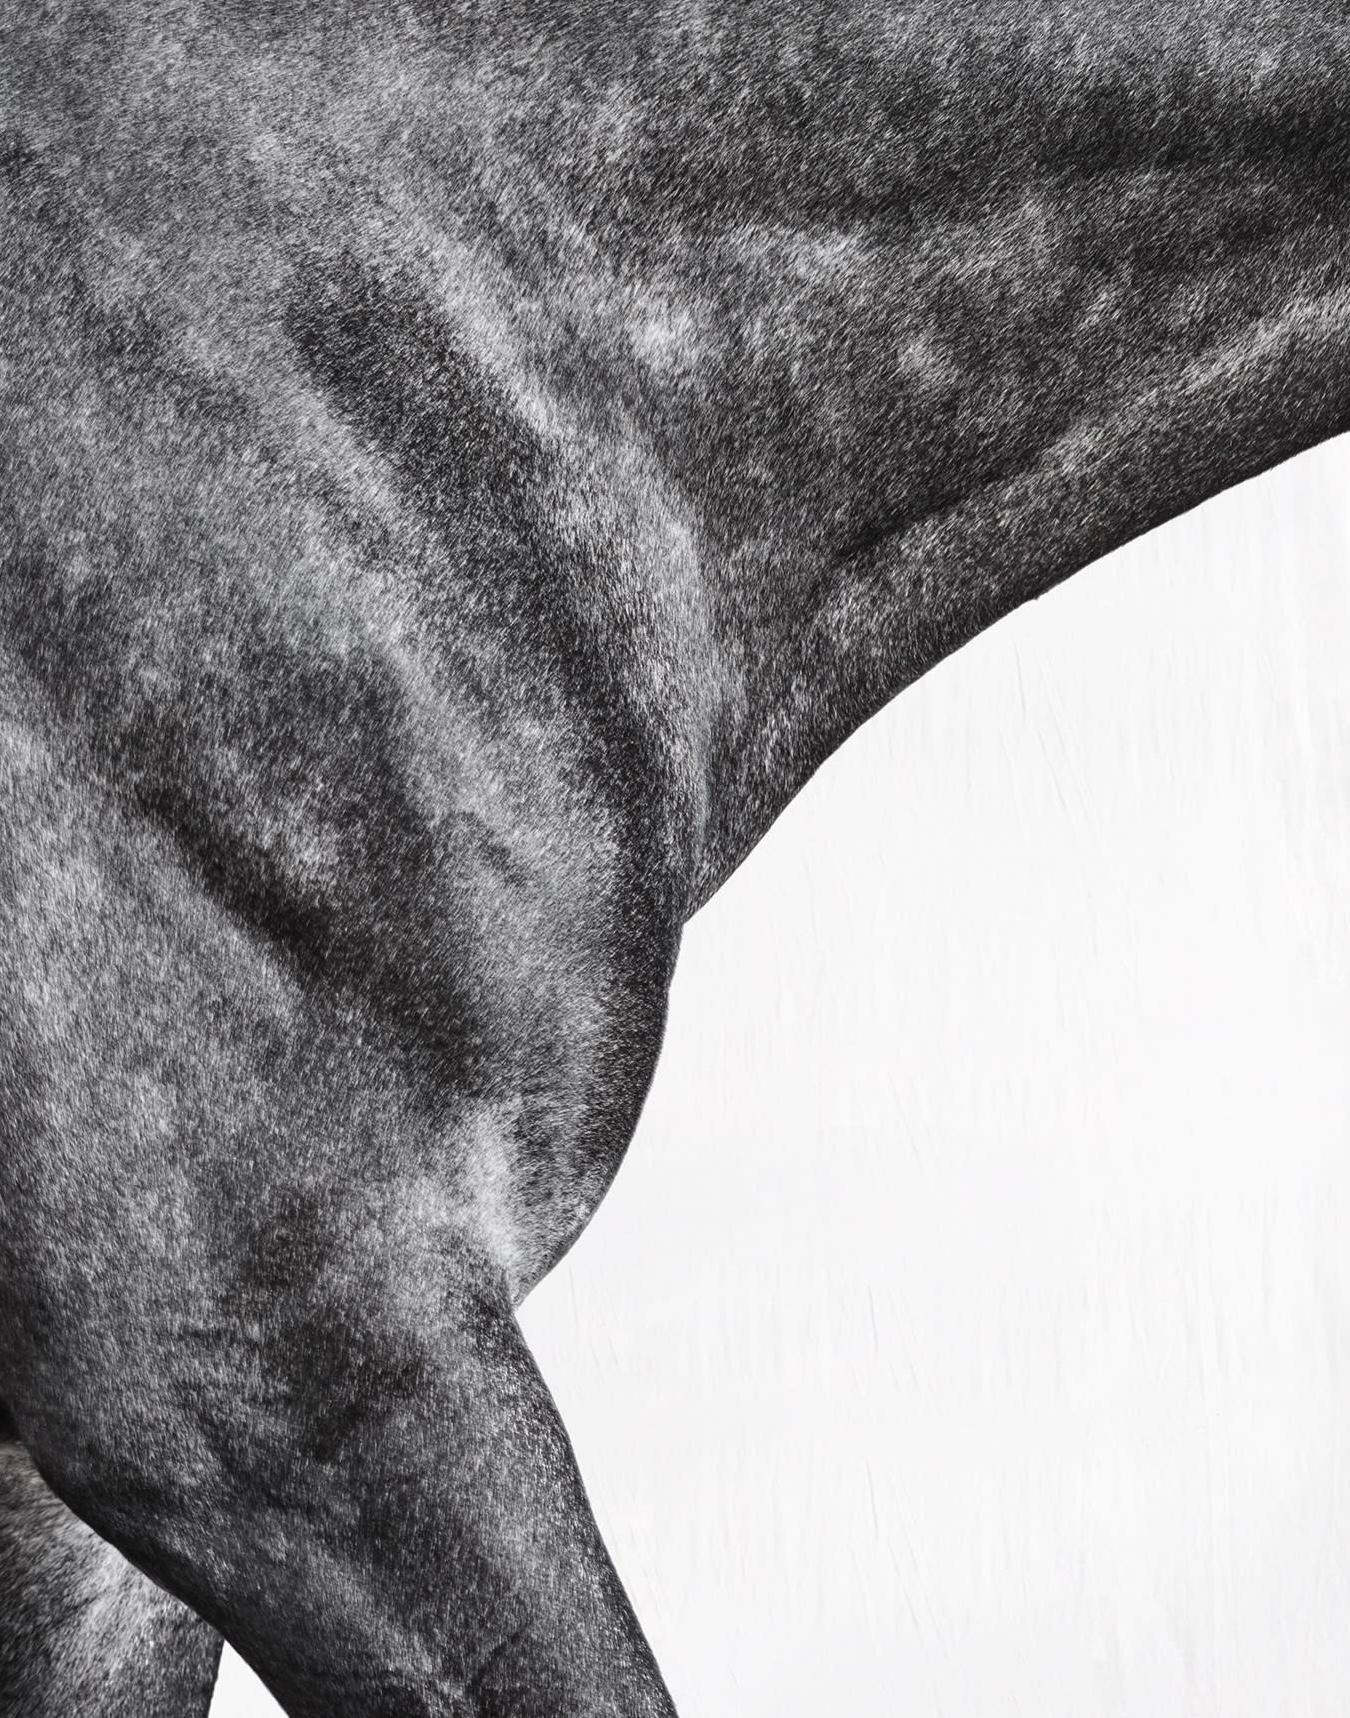 Optimist I - Portrait de cheval en noir et blanc en édition limitée, 2015 - Contemporain Photograph par Juan Lamarca